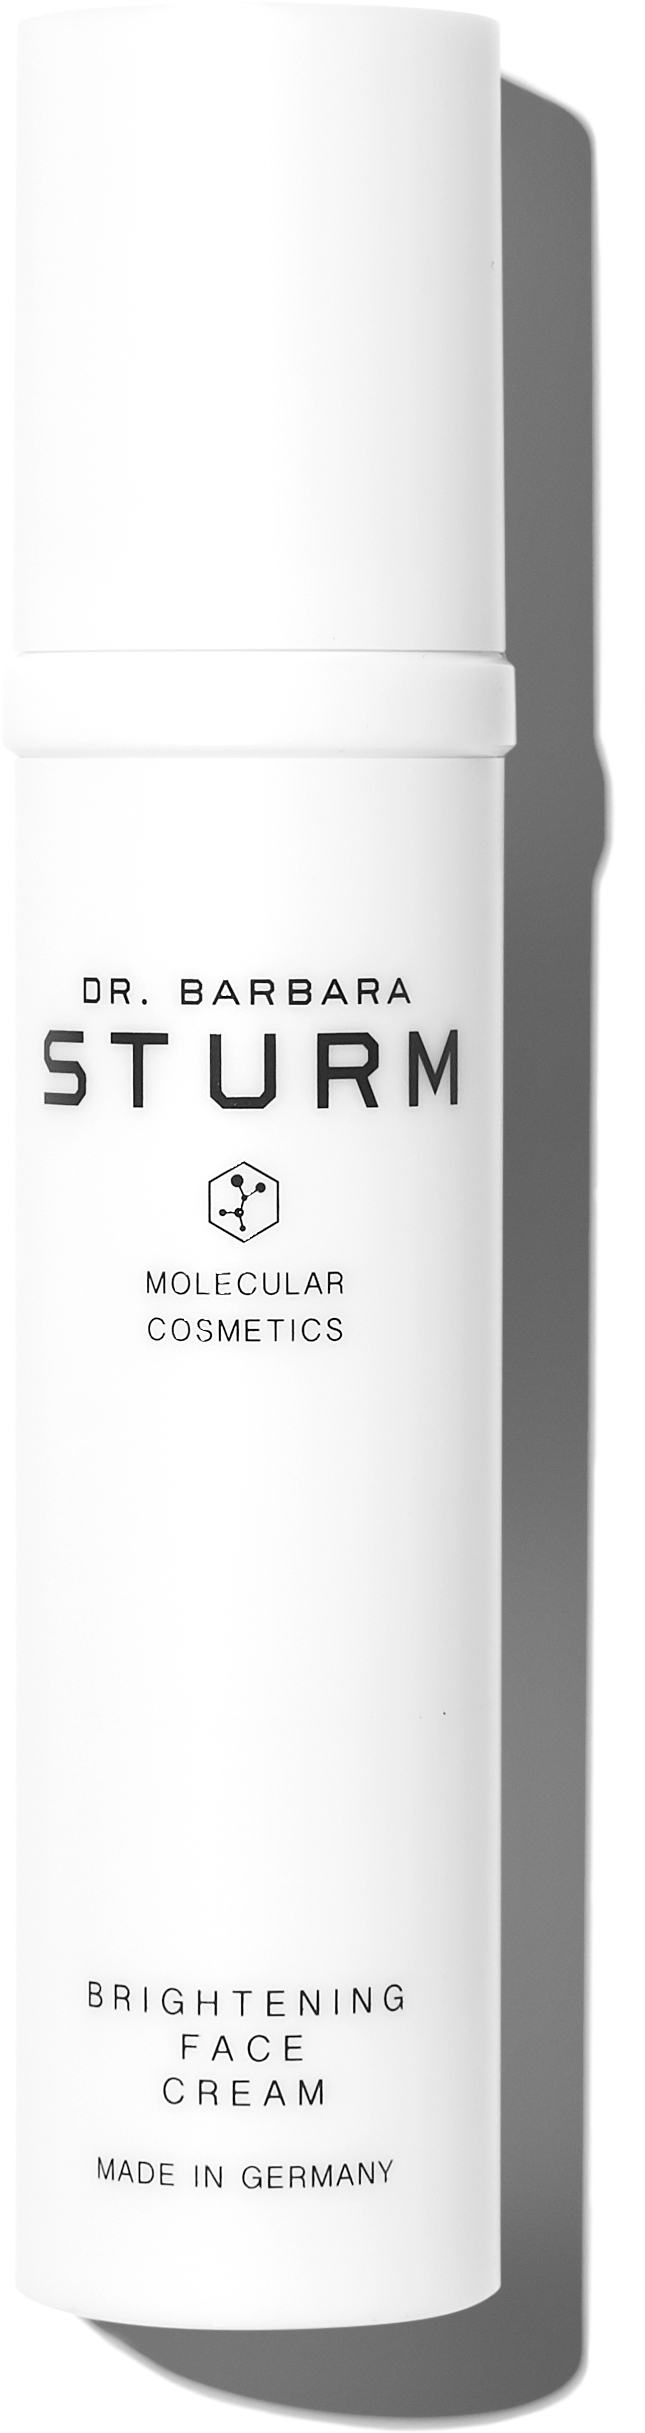 Dr. Barbara Sturm Brightening Face Cream